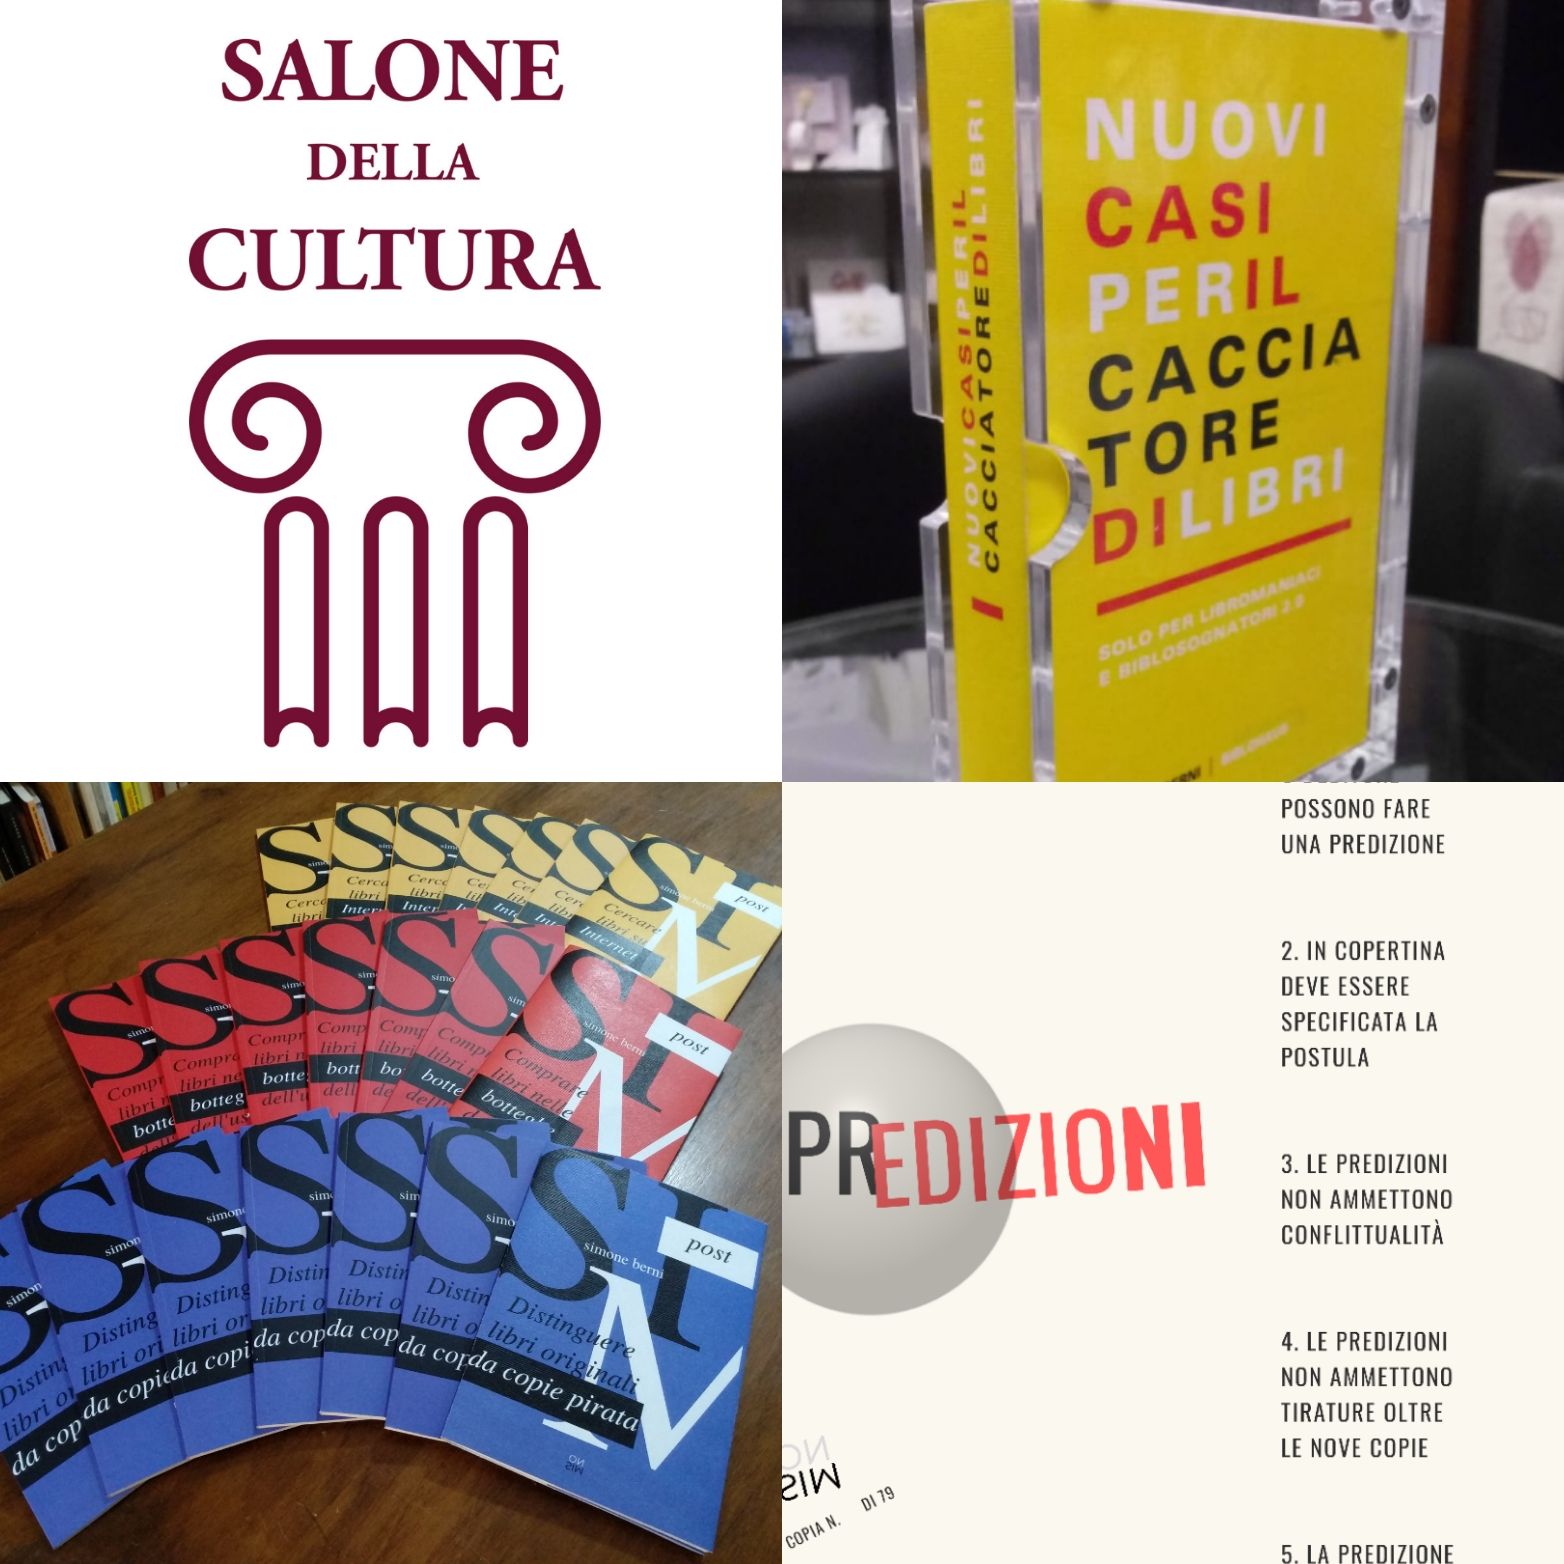 Il cacciatore di libri presente al Salone di Milano 2019: tutte le novità!